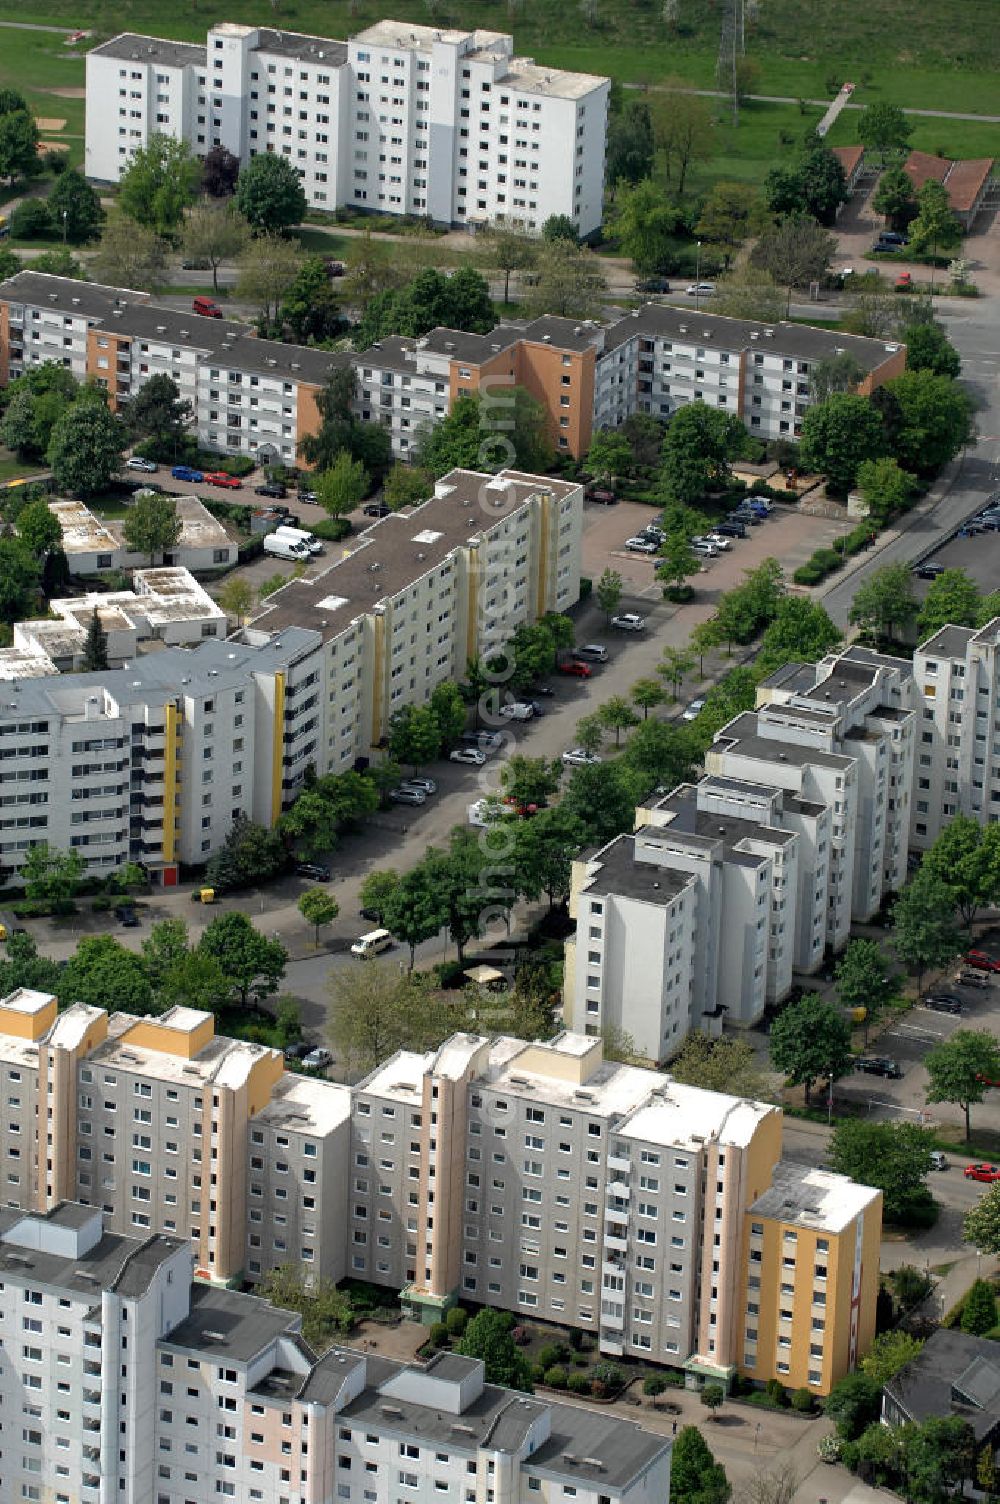 Aerial image Wolfsburg - Blick auf das Wohngebiet an der Jenaer Straße im Stadtteil Westhagen. View of the residential area at the Jenaer Straße in the district Westhagen.